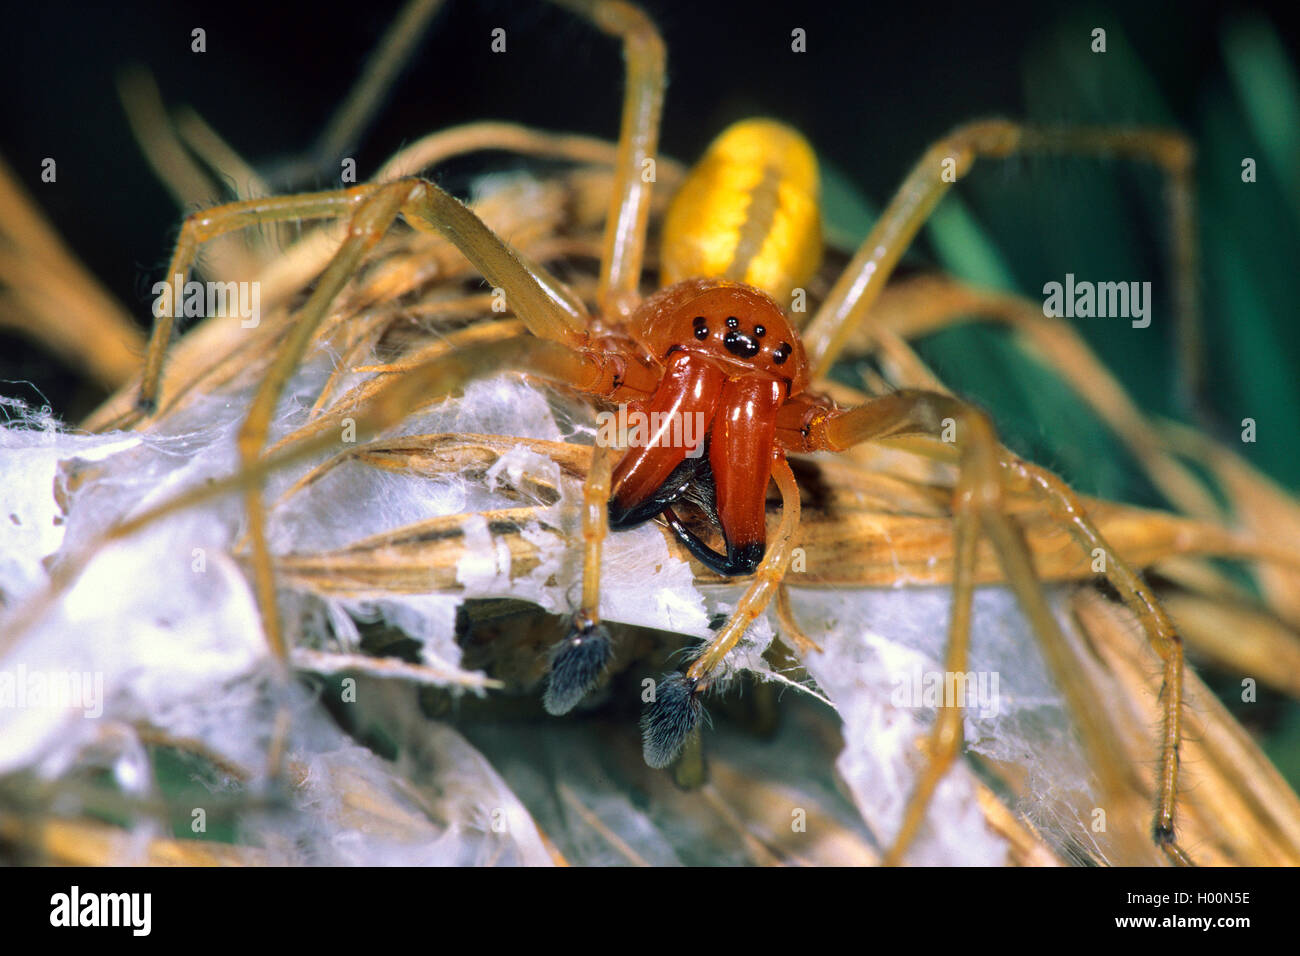 Sac européenne (araignée Cheiracanthium punctorium), homme, Autriche Banque D'Images